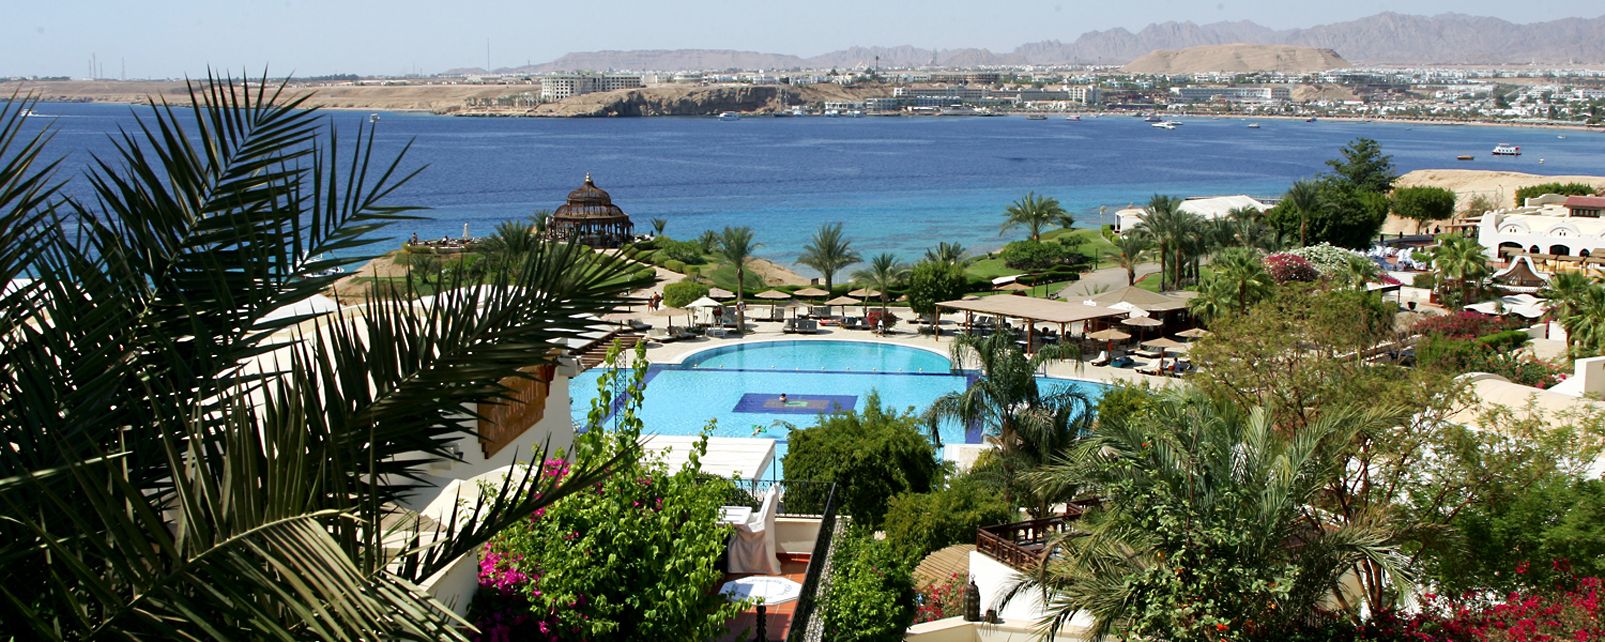 Hotel Sofitel Sharm El Sheikh